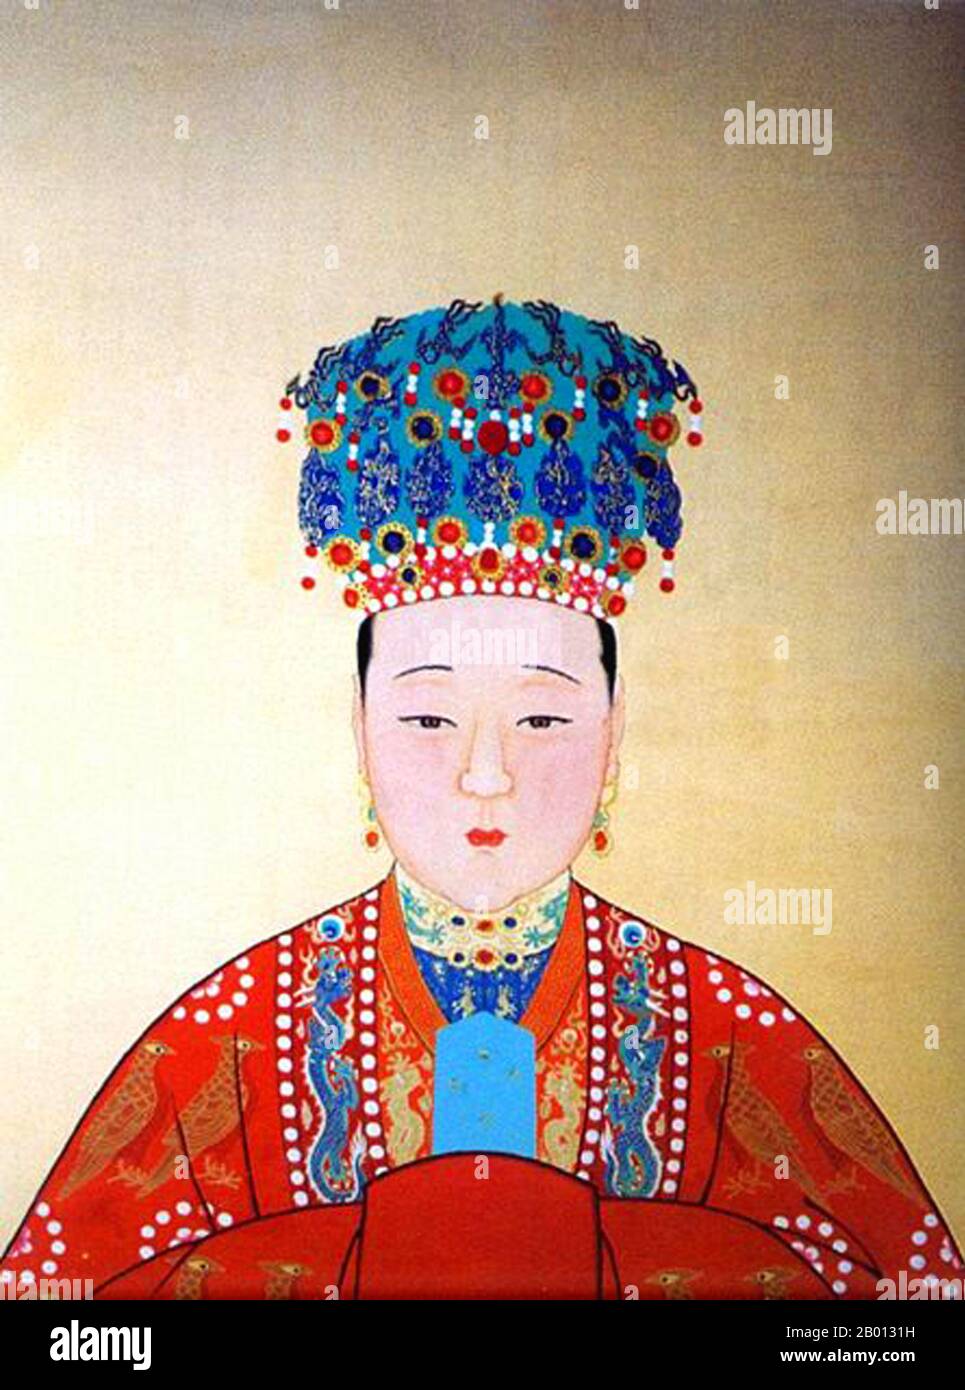 Cina: Imperatrice Xiao Duan Xian (1565-1620), consorte del 14° imperatore Ming Wanli (r. 1572-1620). Pittura a chiocciola sospesa, XVI-XVII secolo. L'imperatrice Xiaoduanxian (morto nel 1620), nome personale Wang Xijie, fu la consorte dell'imperatore Wanli Wanli sulla dinastia Ming. Non gli portava figli, era conosciuta per la sua solenne maniera, la pietà filiale e la crudeltà estrema ai suoi servi, spesso avendo le sue schiere picchiate, talvolta a morte. Divenne la più lunga consorte di imperatrice nella storia cinese. Foto Stock